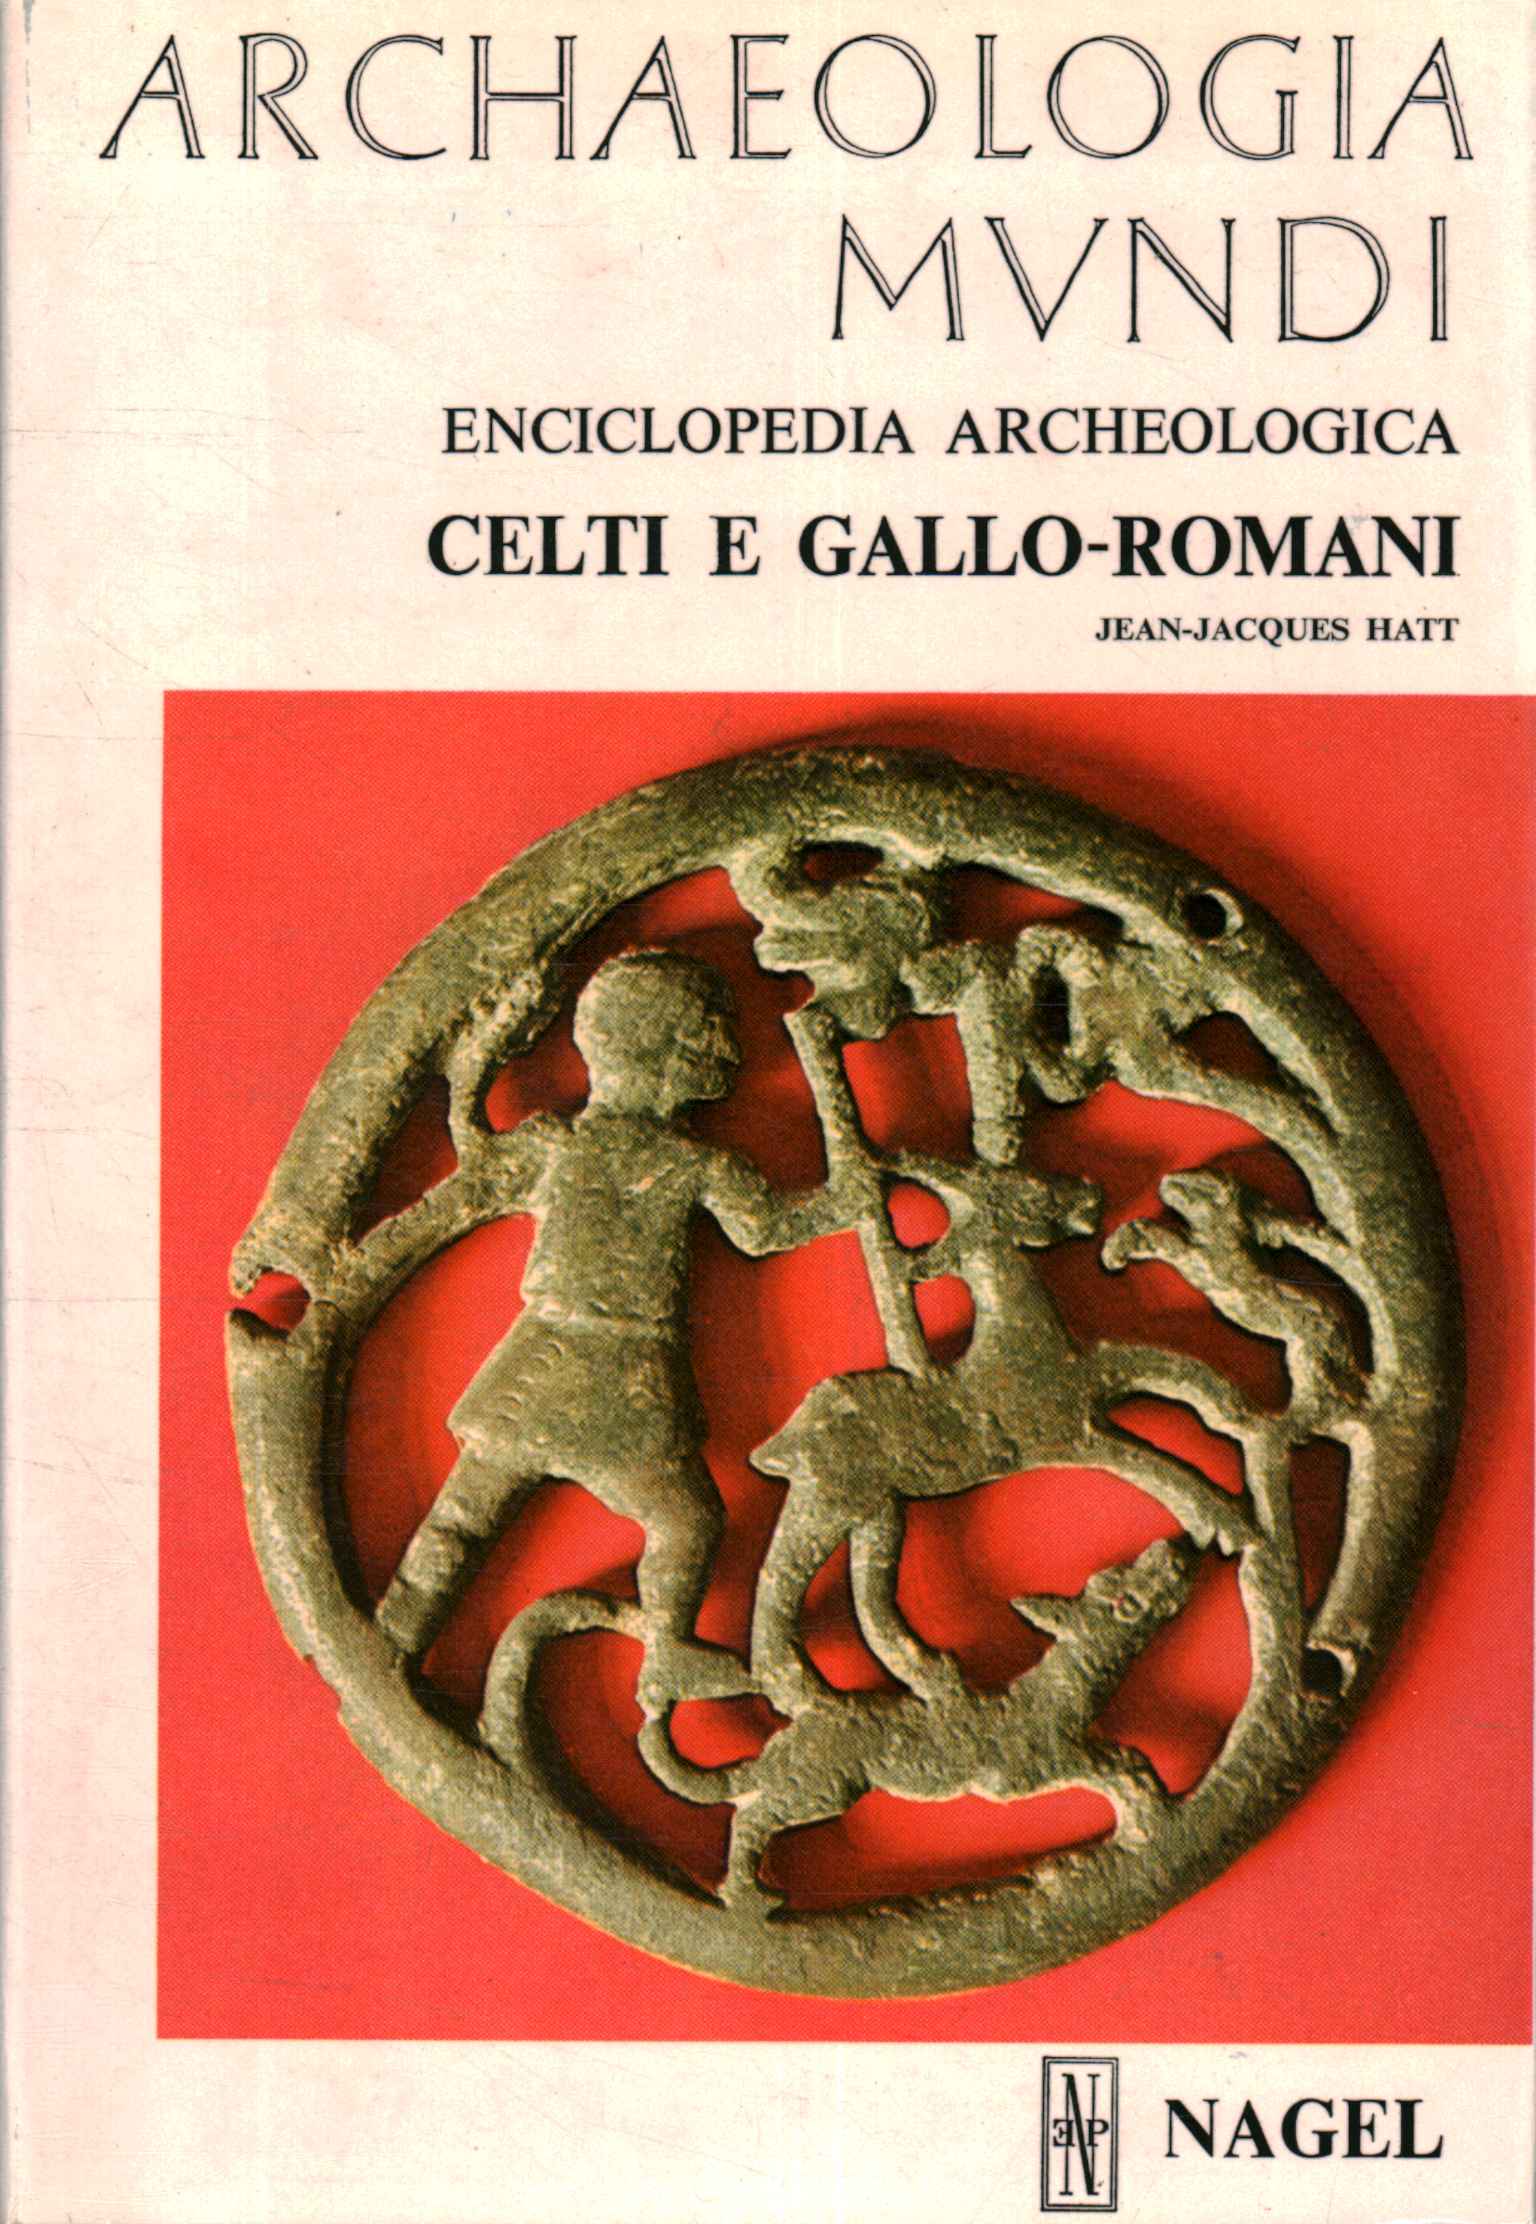 Archäologische Enzyklopädie. Kelten und Gallier-r